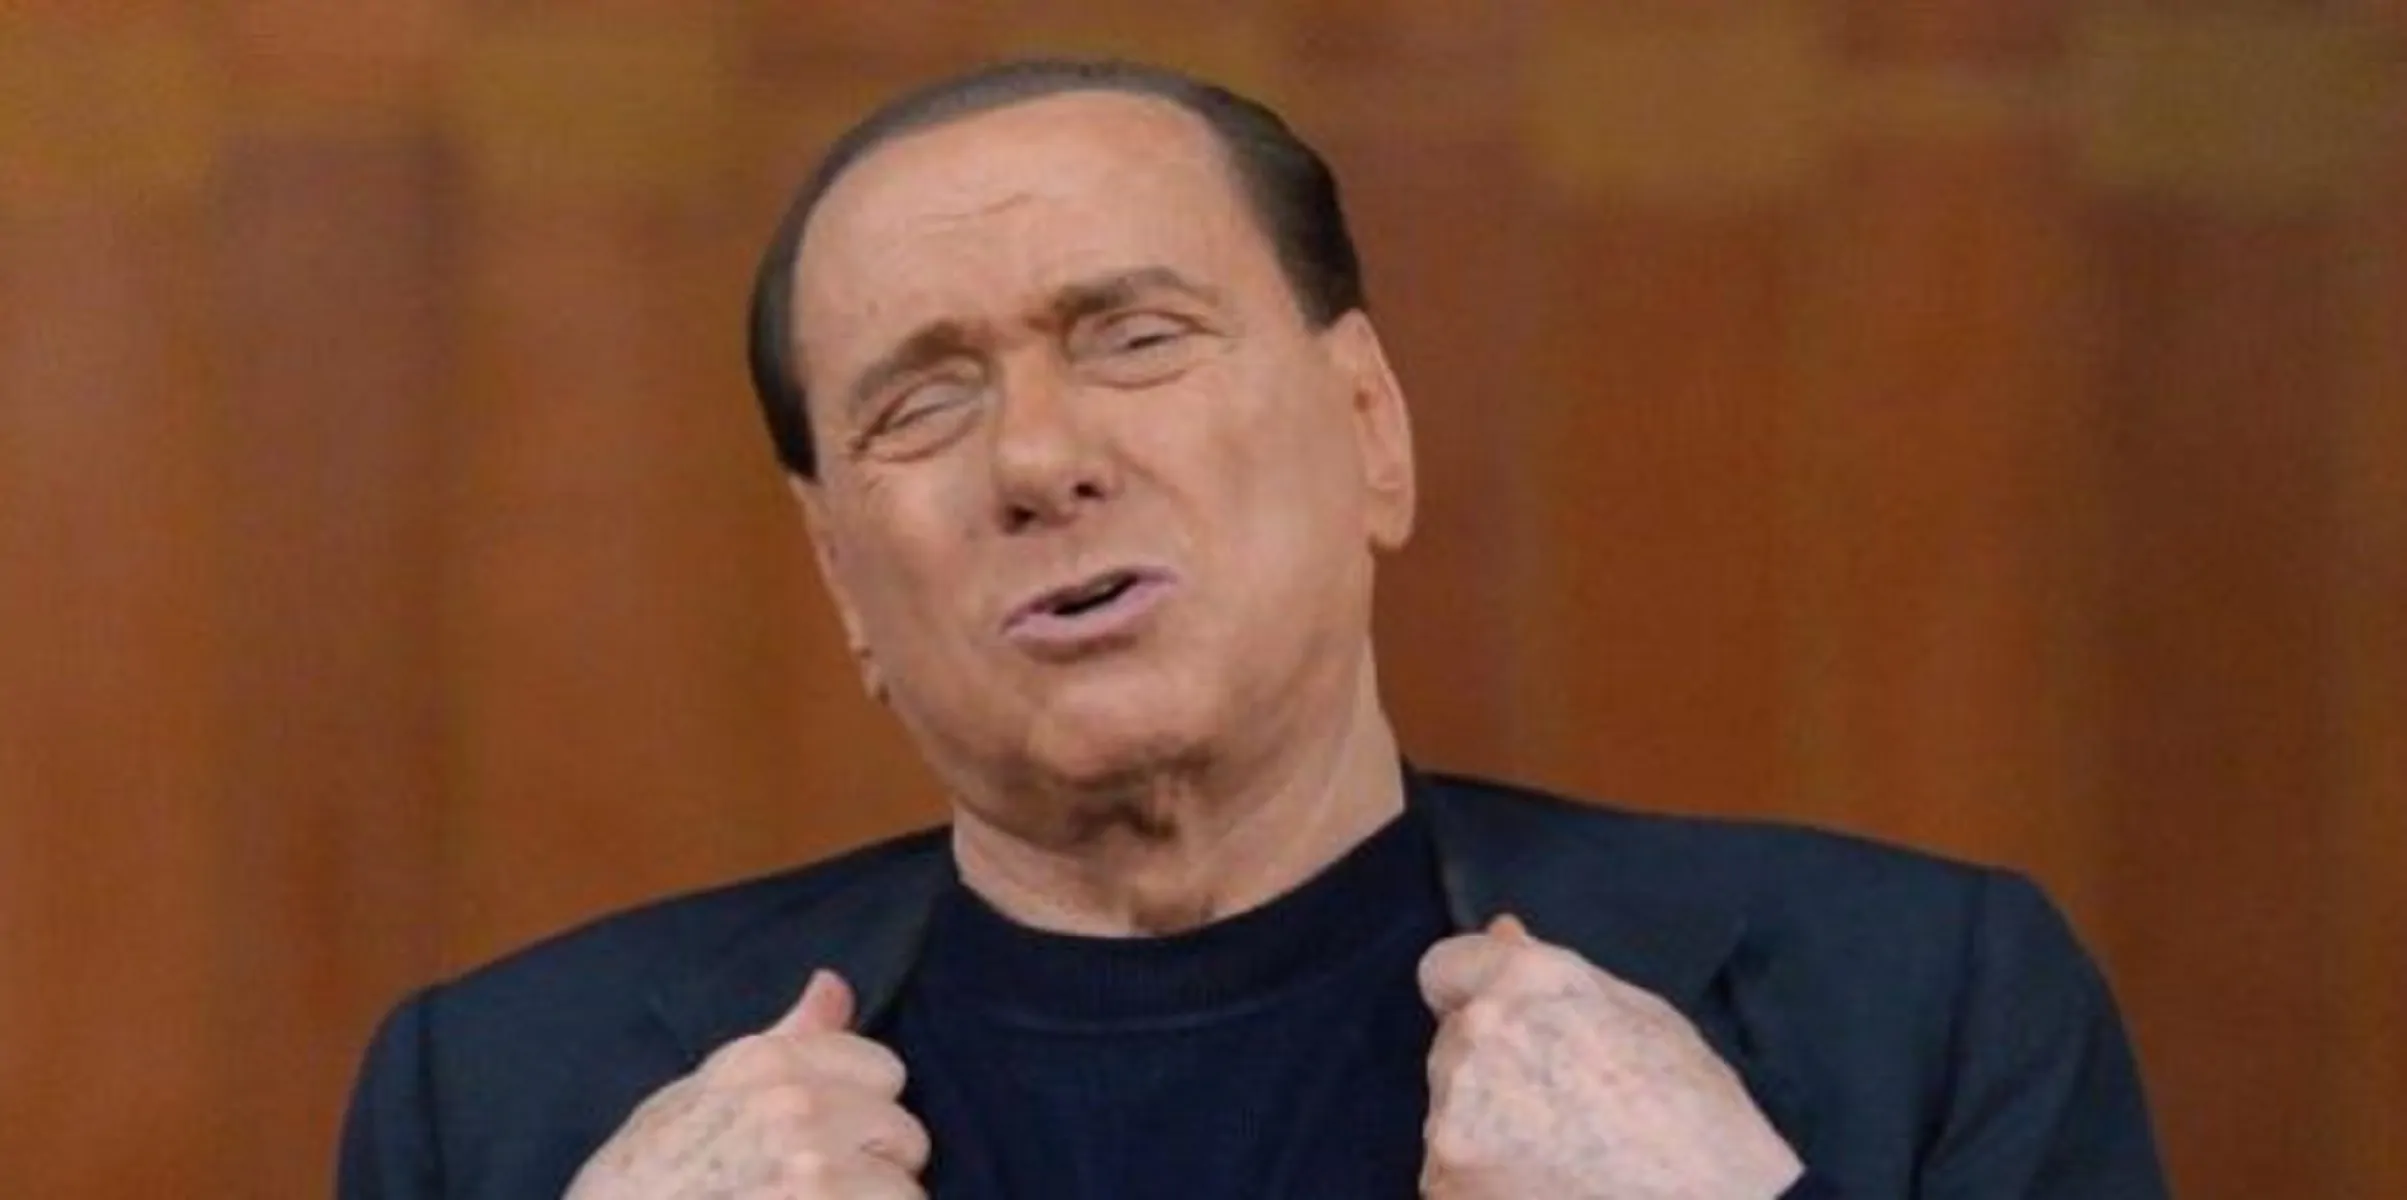 Reddito di Cittadinanza, Berlusconi dice no: "È disastroso"